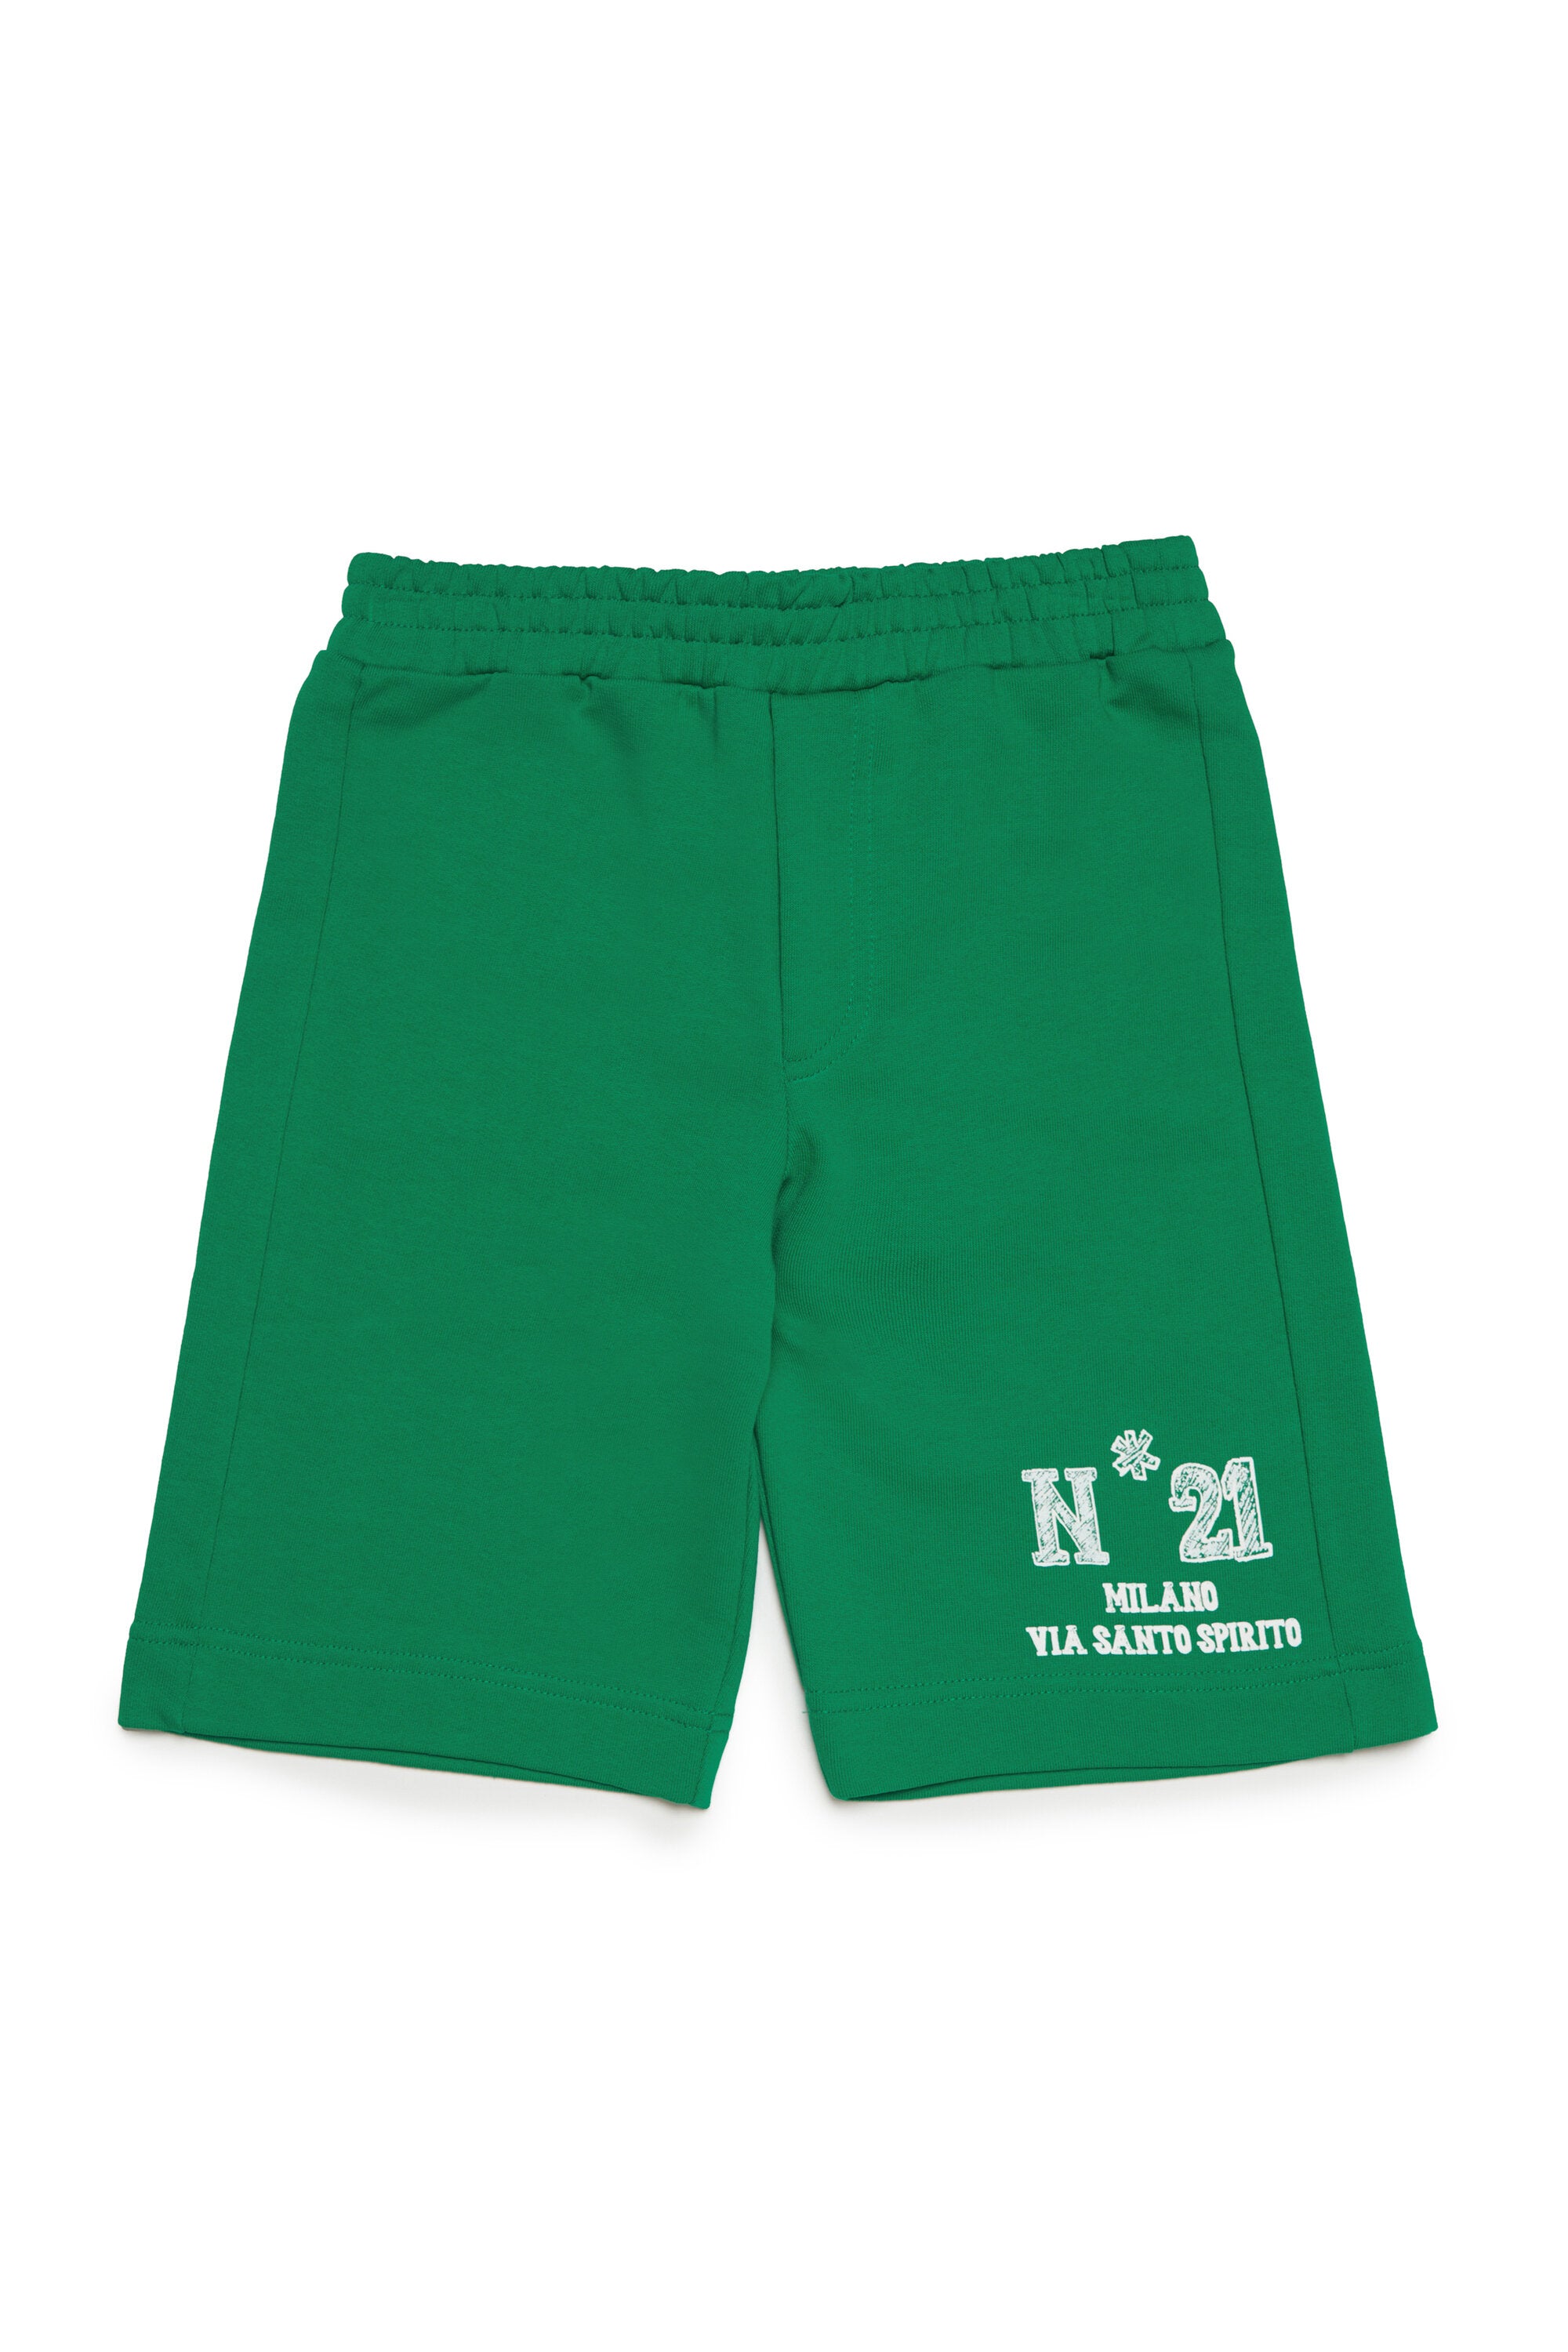 Fleece shorts with N°21 Milano logo